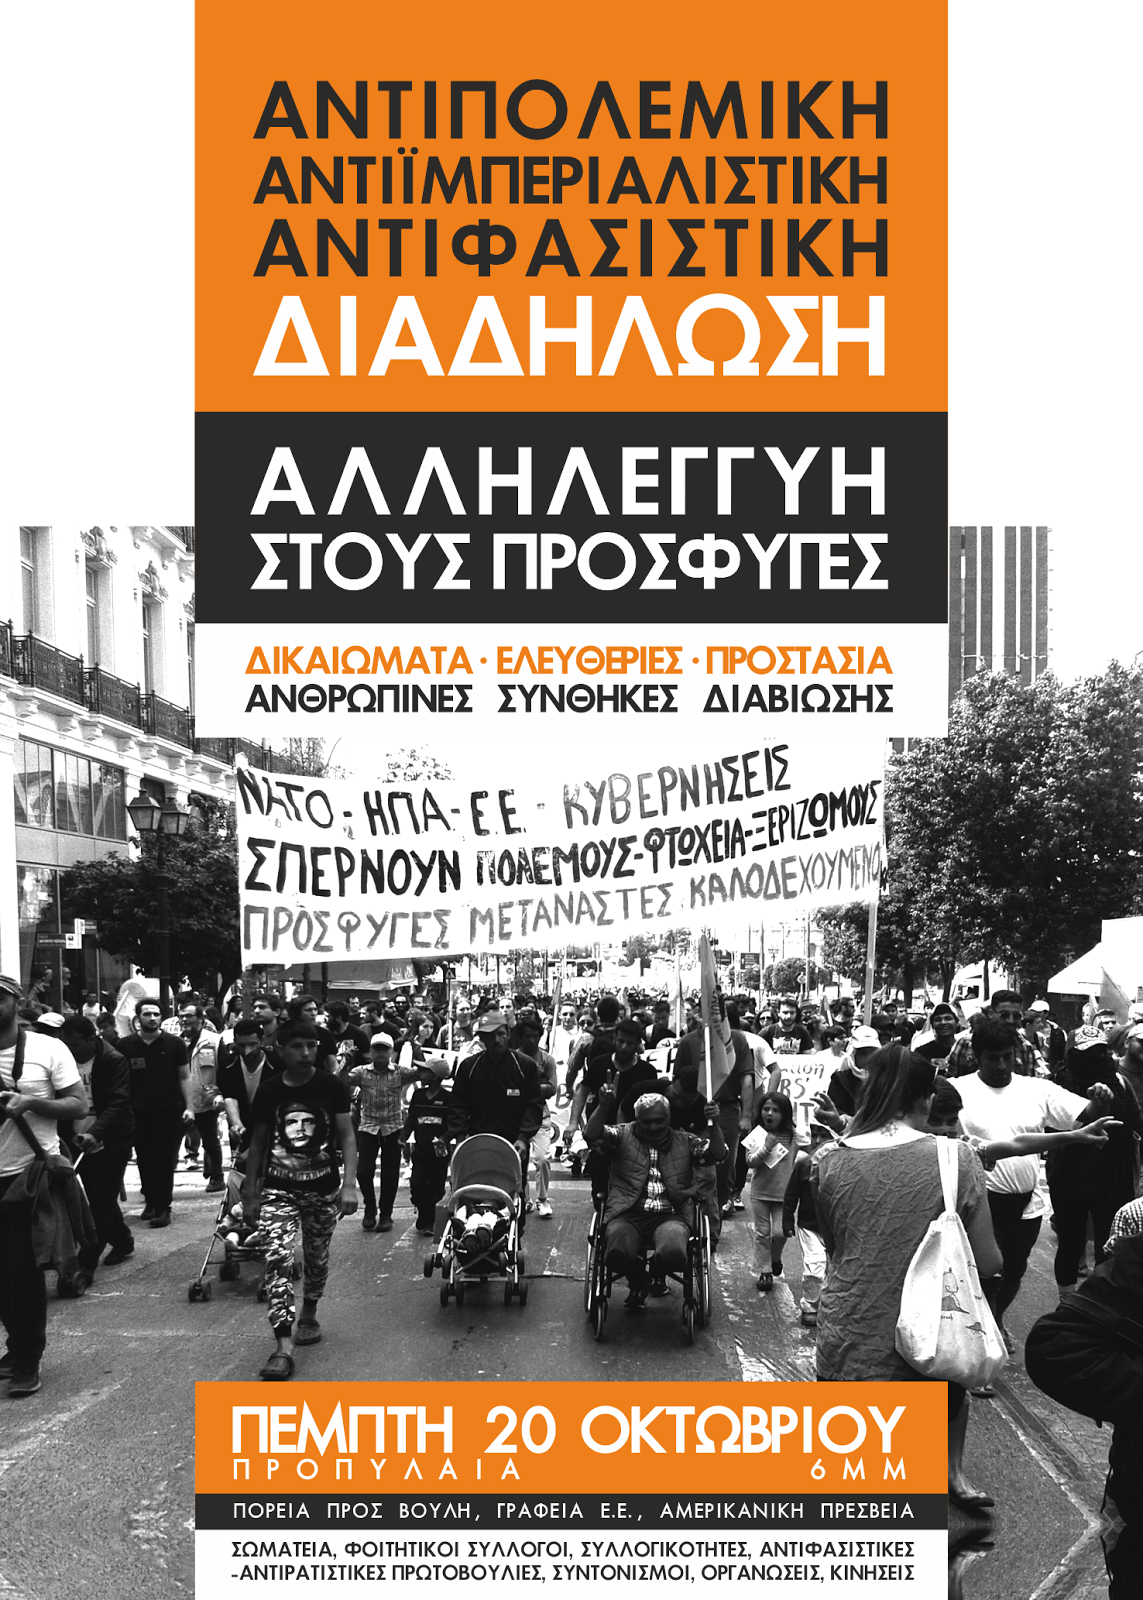 Πέμπτη 20/10 Αντιπολεμική-αντιϊμπεριαλιστική-αντιφασιστική διαδήλωση αλληλεγγύης στους πρόσφυγες